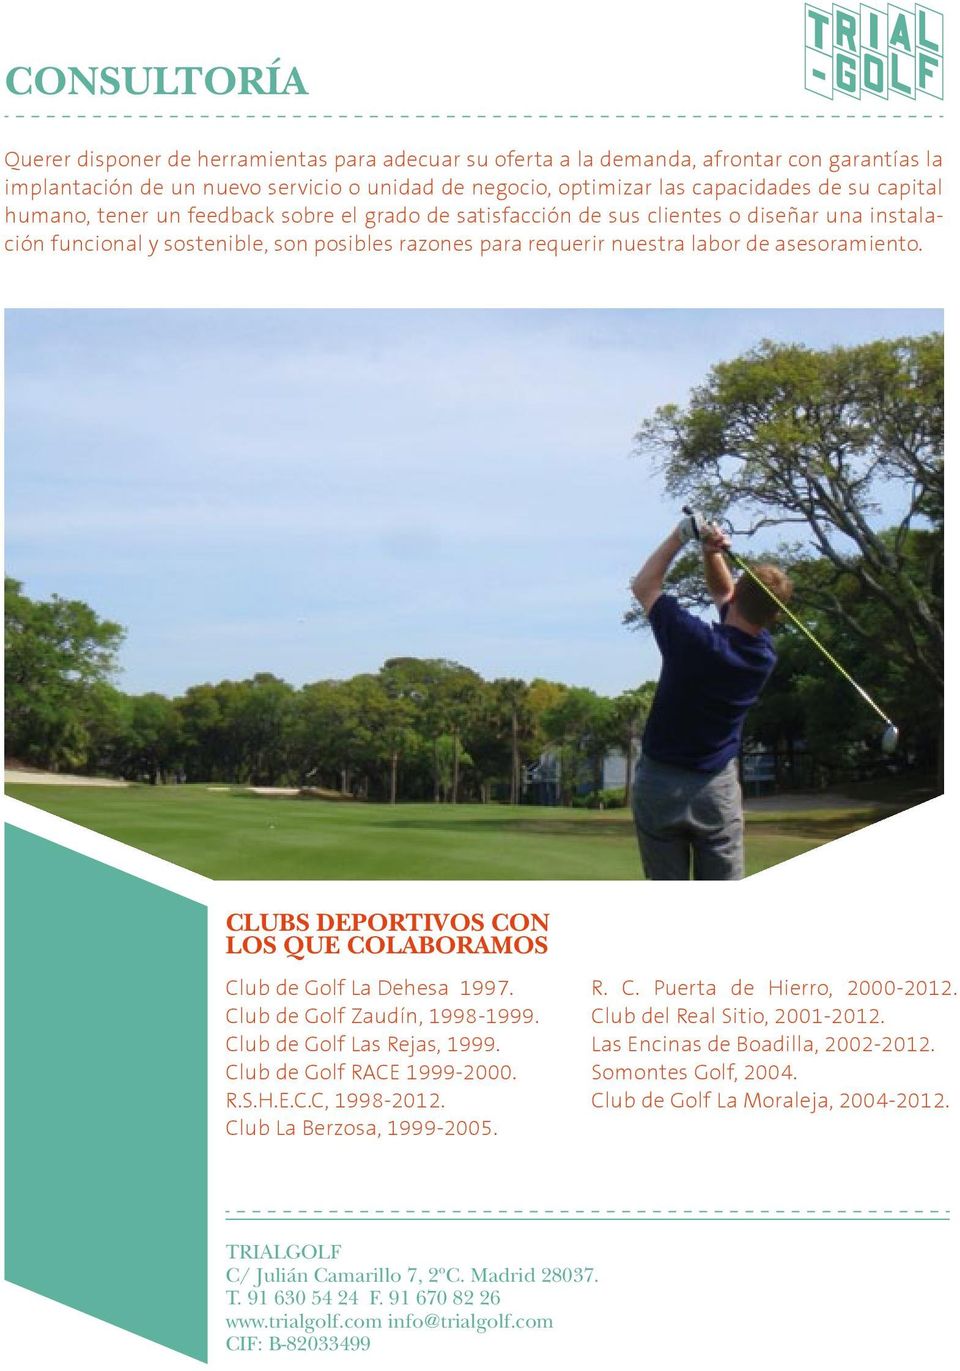 CLUBS DEPORTIVOS CON LOS QUE COLABORAMOS Club de Golf La Dehesa 1997. Club de Golf Zaudín, 1998-1999. Club de Golf Las Rejas, 1999. Club de Golf RACE 1999-2000. R.S.H.E.C.C, 1998-2012.